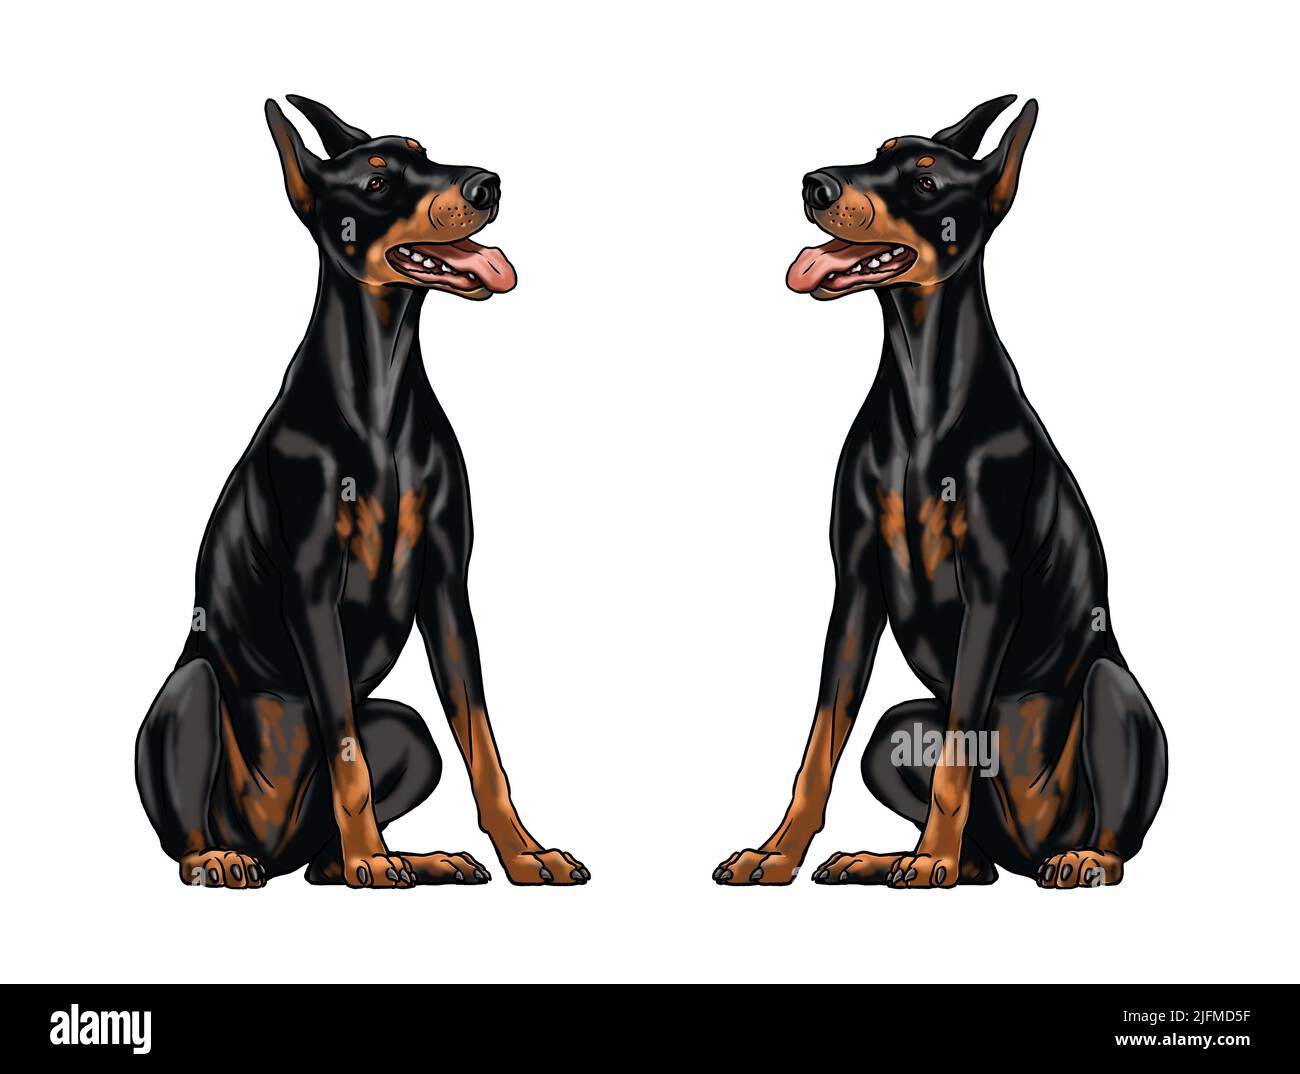 Niedliche Dobermann Zeichnung für zum ausmalen. Isolierte Illustration mit dem eleganten Hund. Schwarze Dobermann Pinscher Zeichnung. Stockfoto